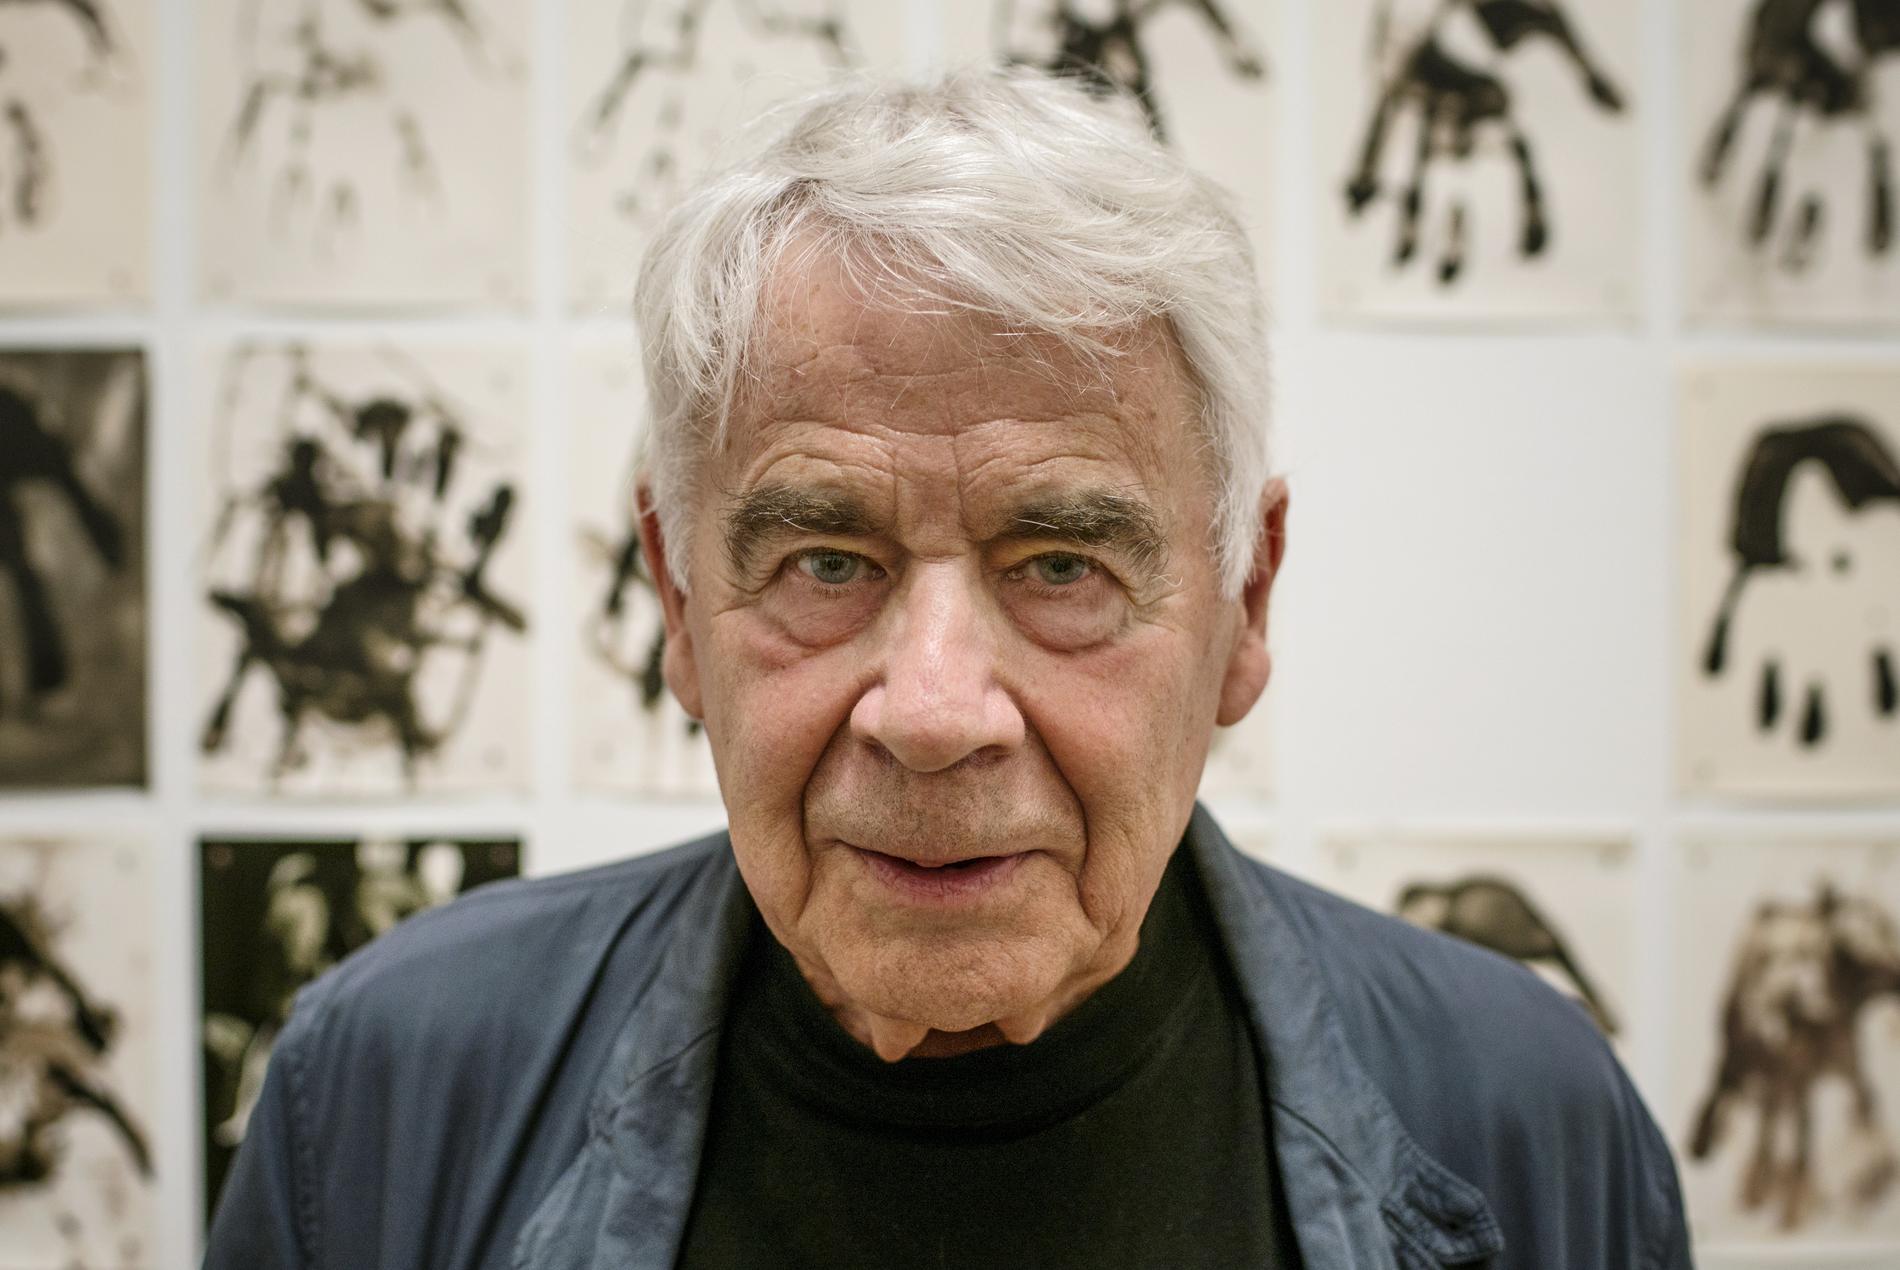 Fotografen Gunnar Smoliansky blev 86 år.